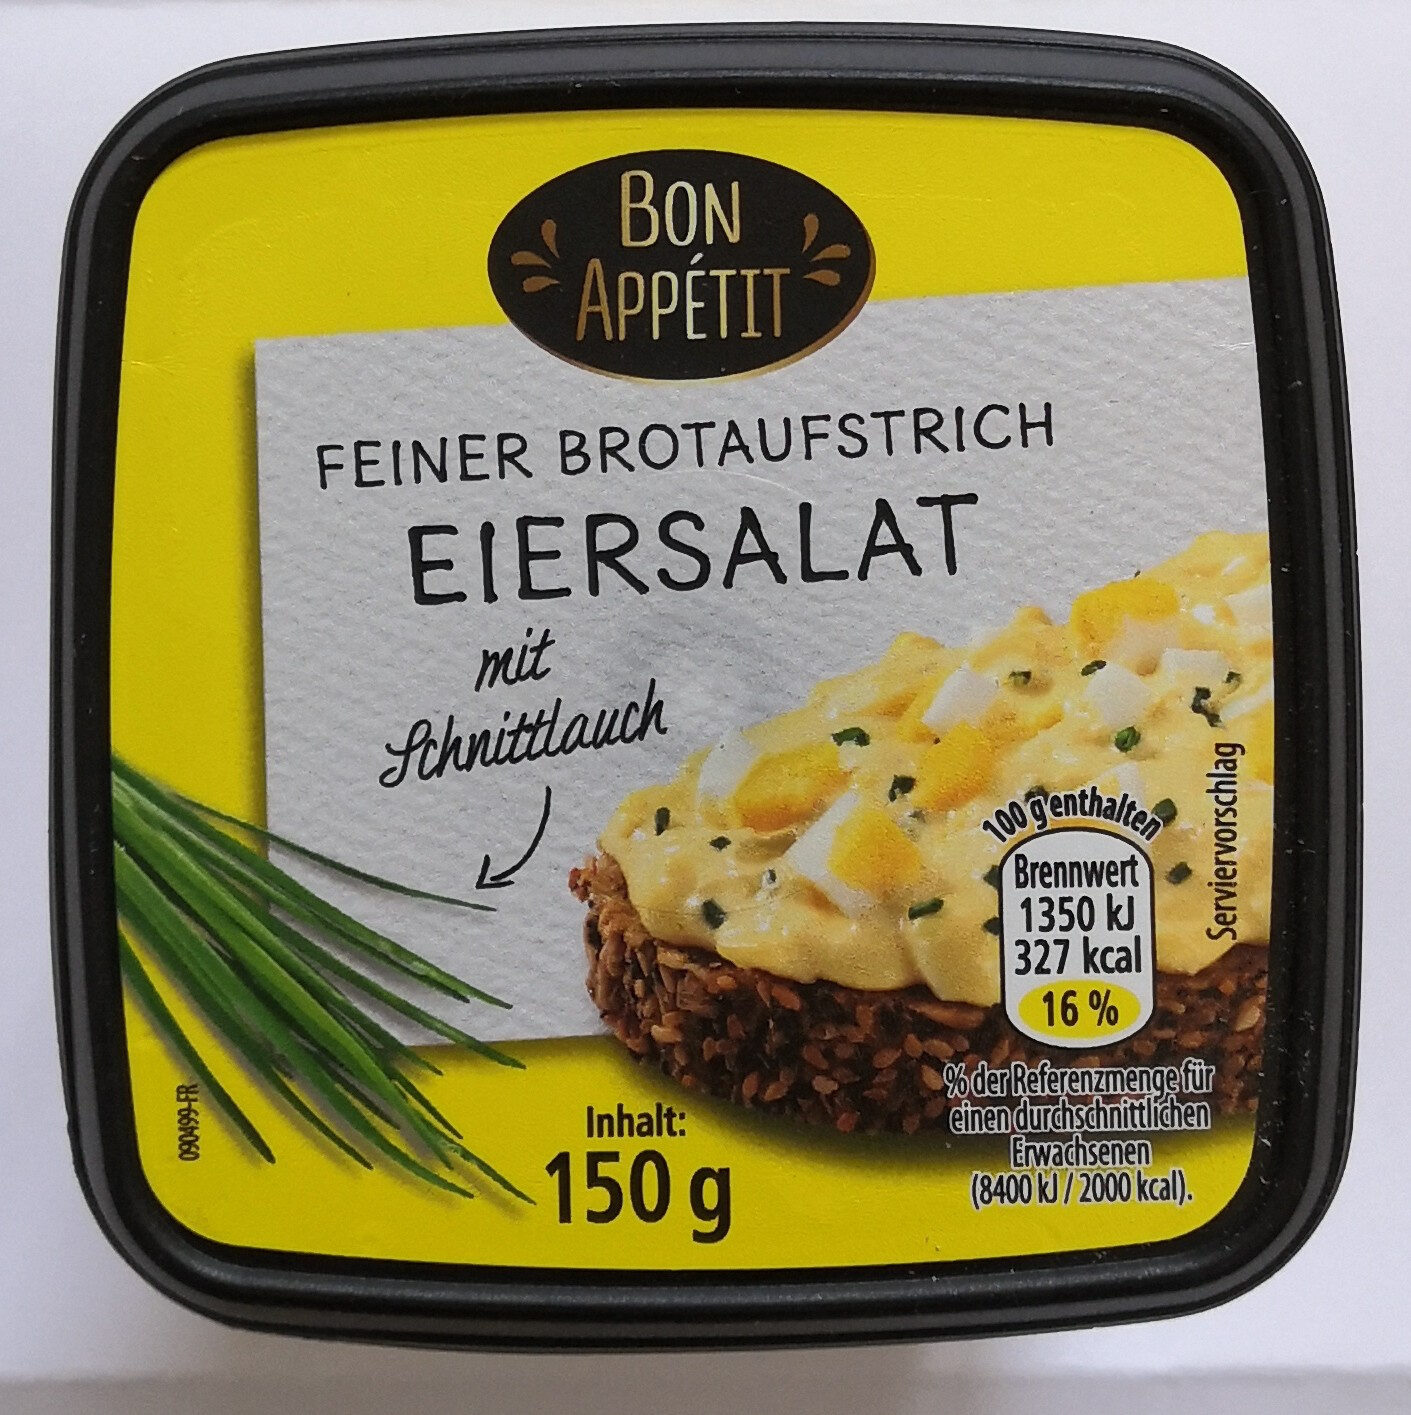 Bon Appétit Eiersalat mit Schnittlauch - Producto - de